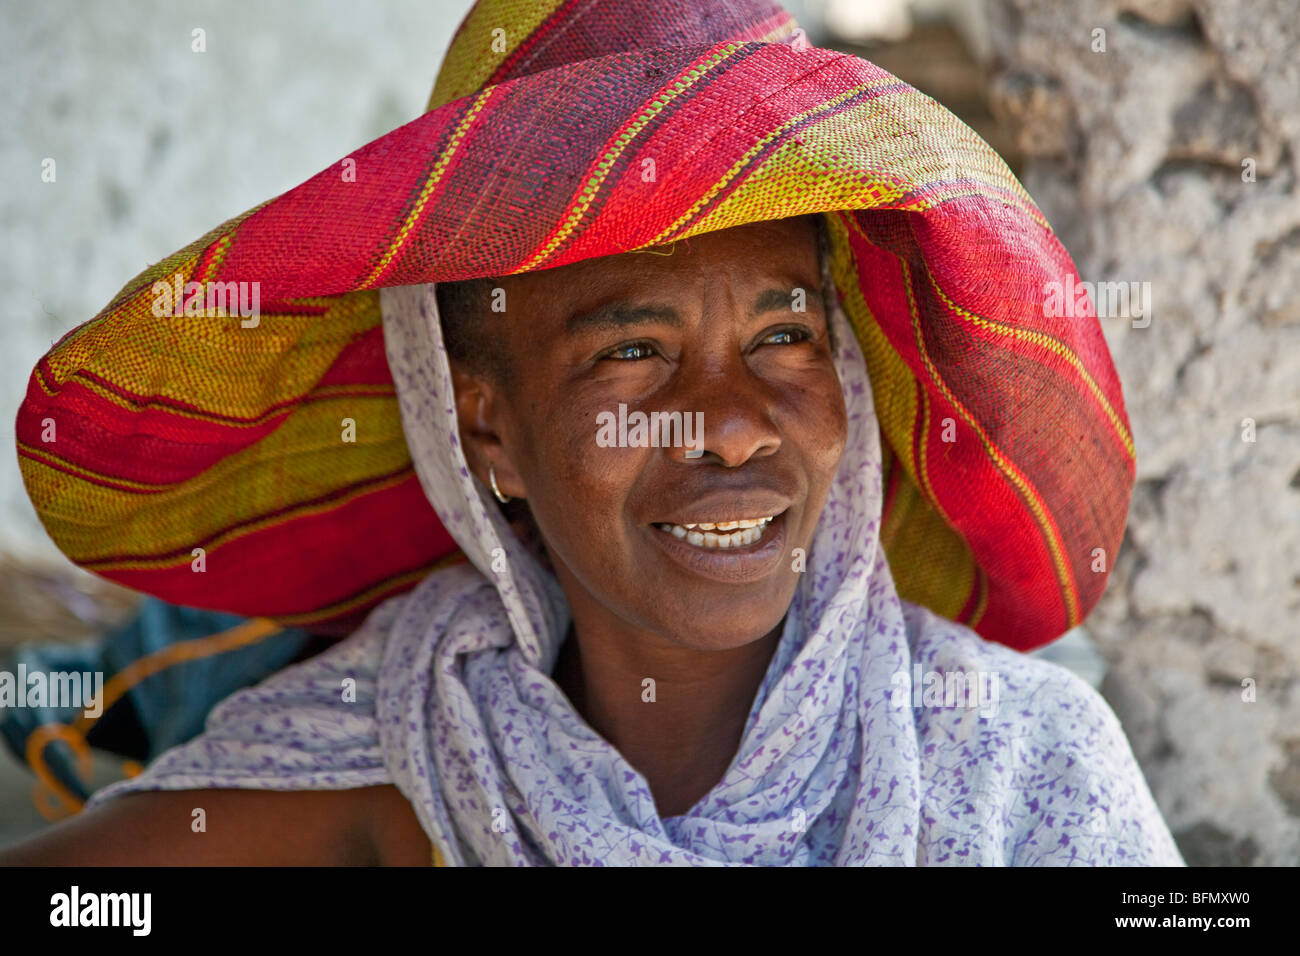 Tanzania, Zanzibar. A Zanzibari woman in Paje village. Stock Photo